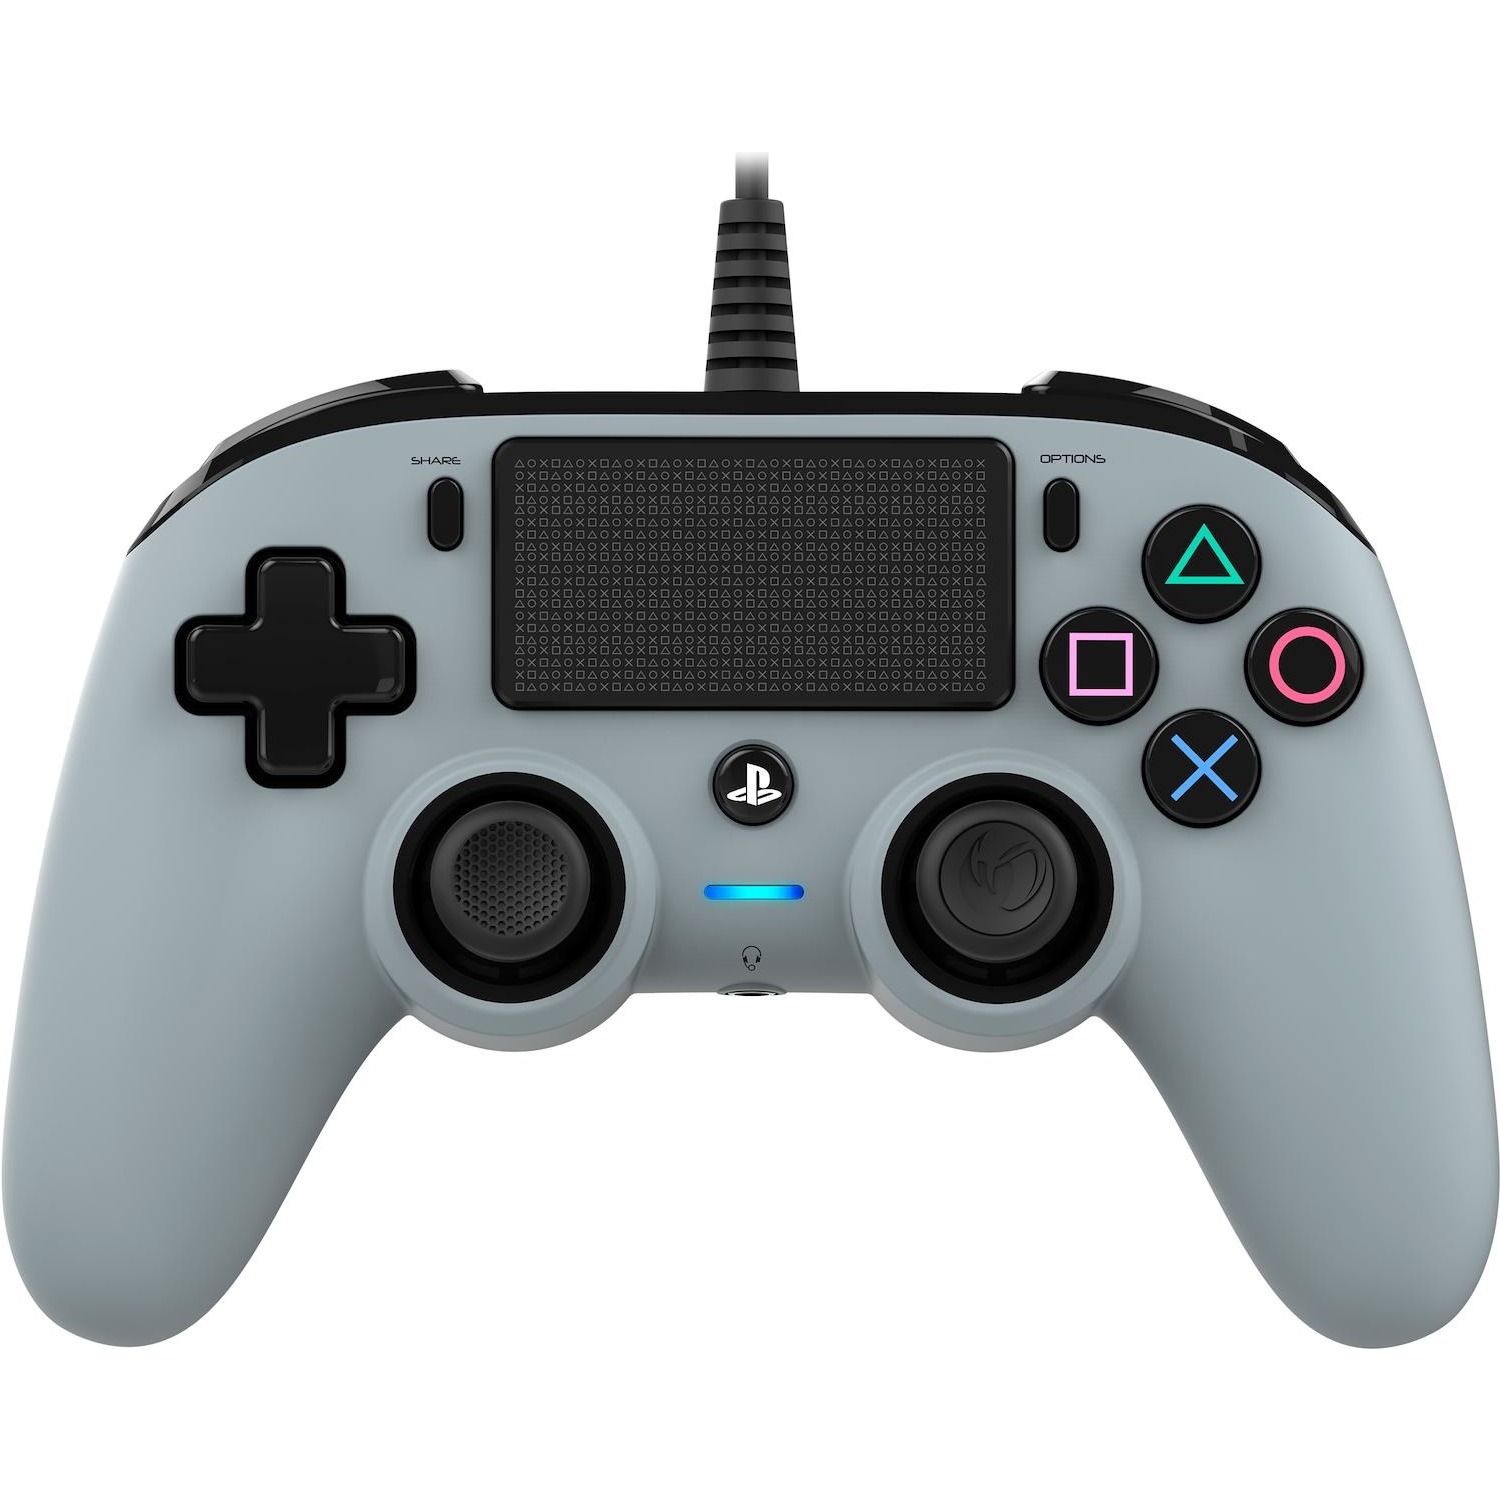 Immagine per Nacon PS4 Pad Compact Controller grey wired da DIMOStore